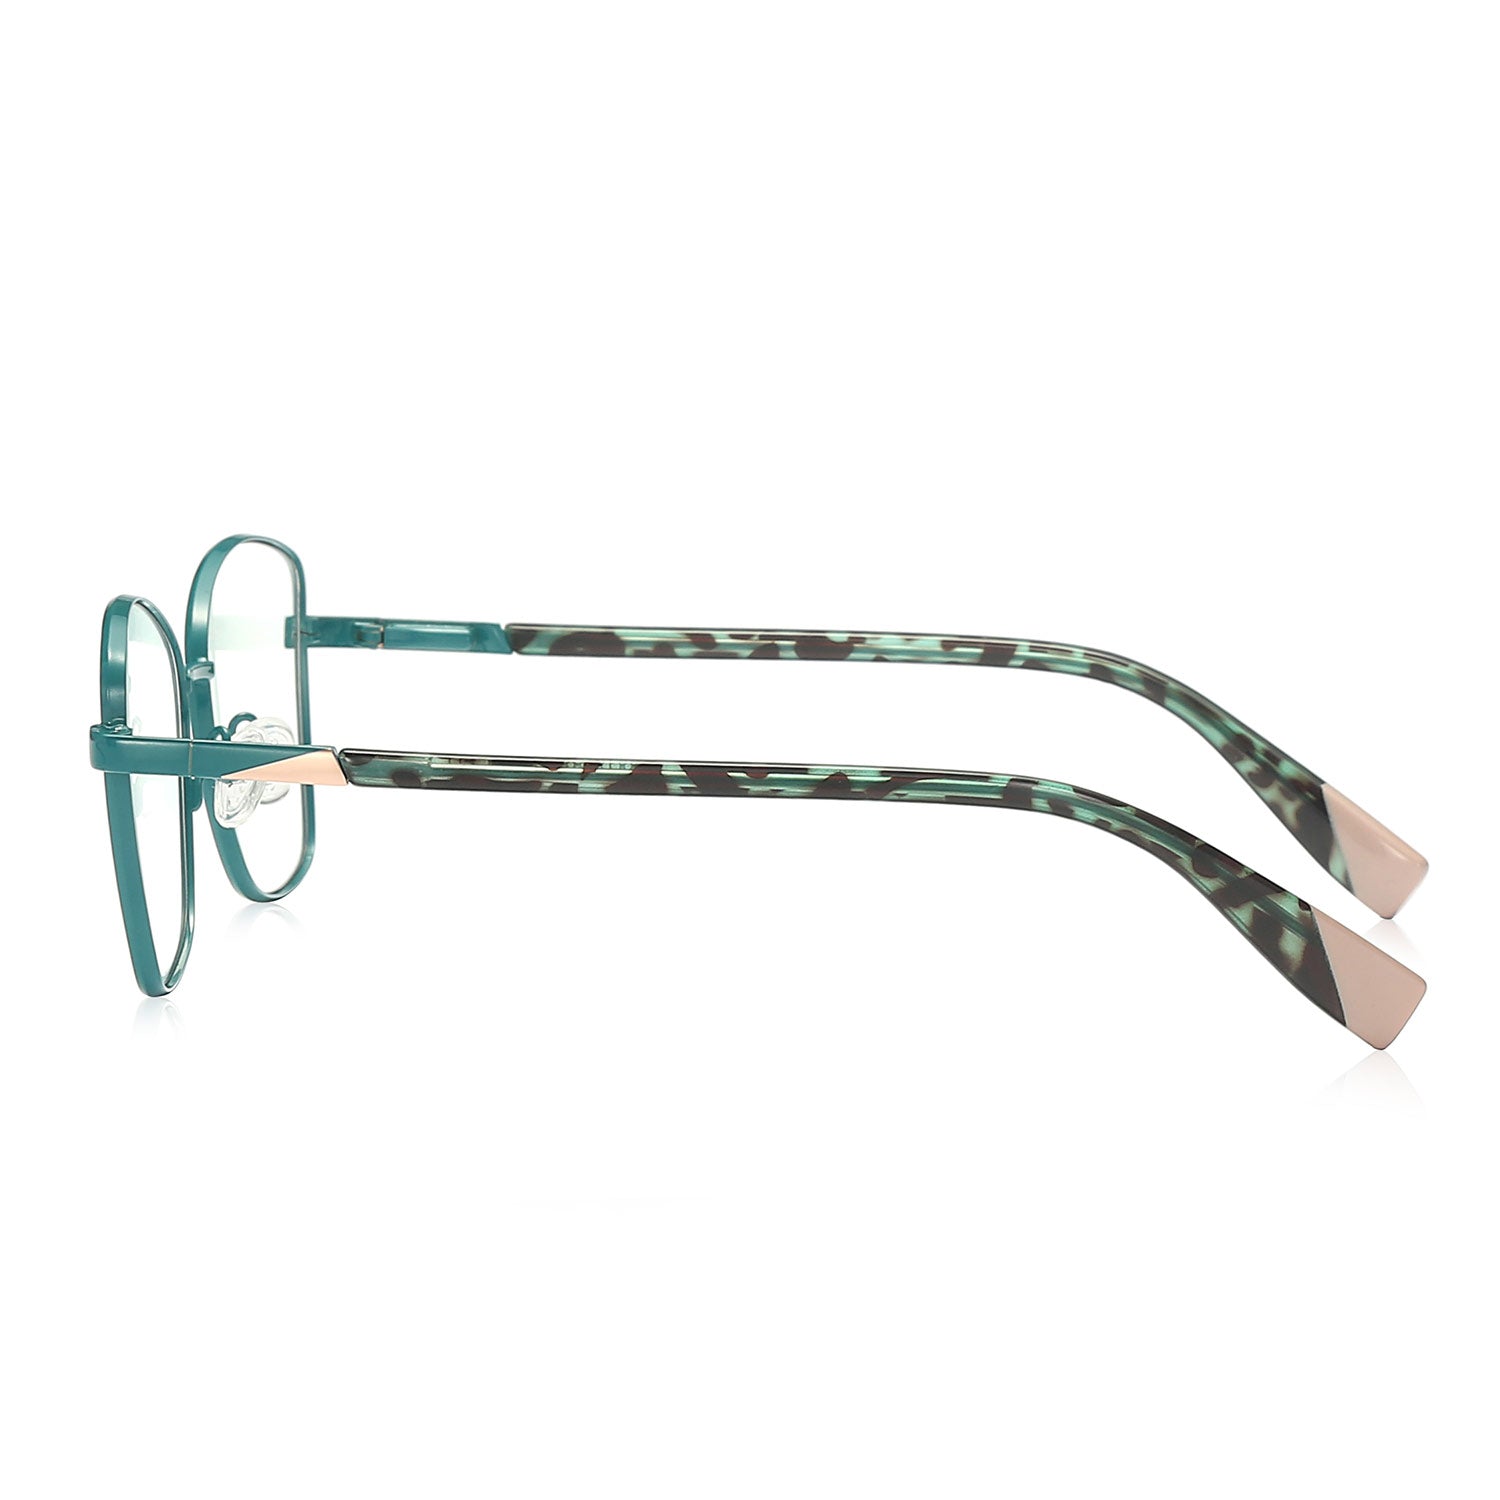 Bade | Rectangle/Green/Metal - Eyeglasses | ELKLOOK